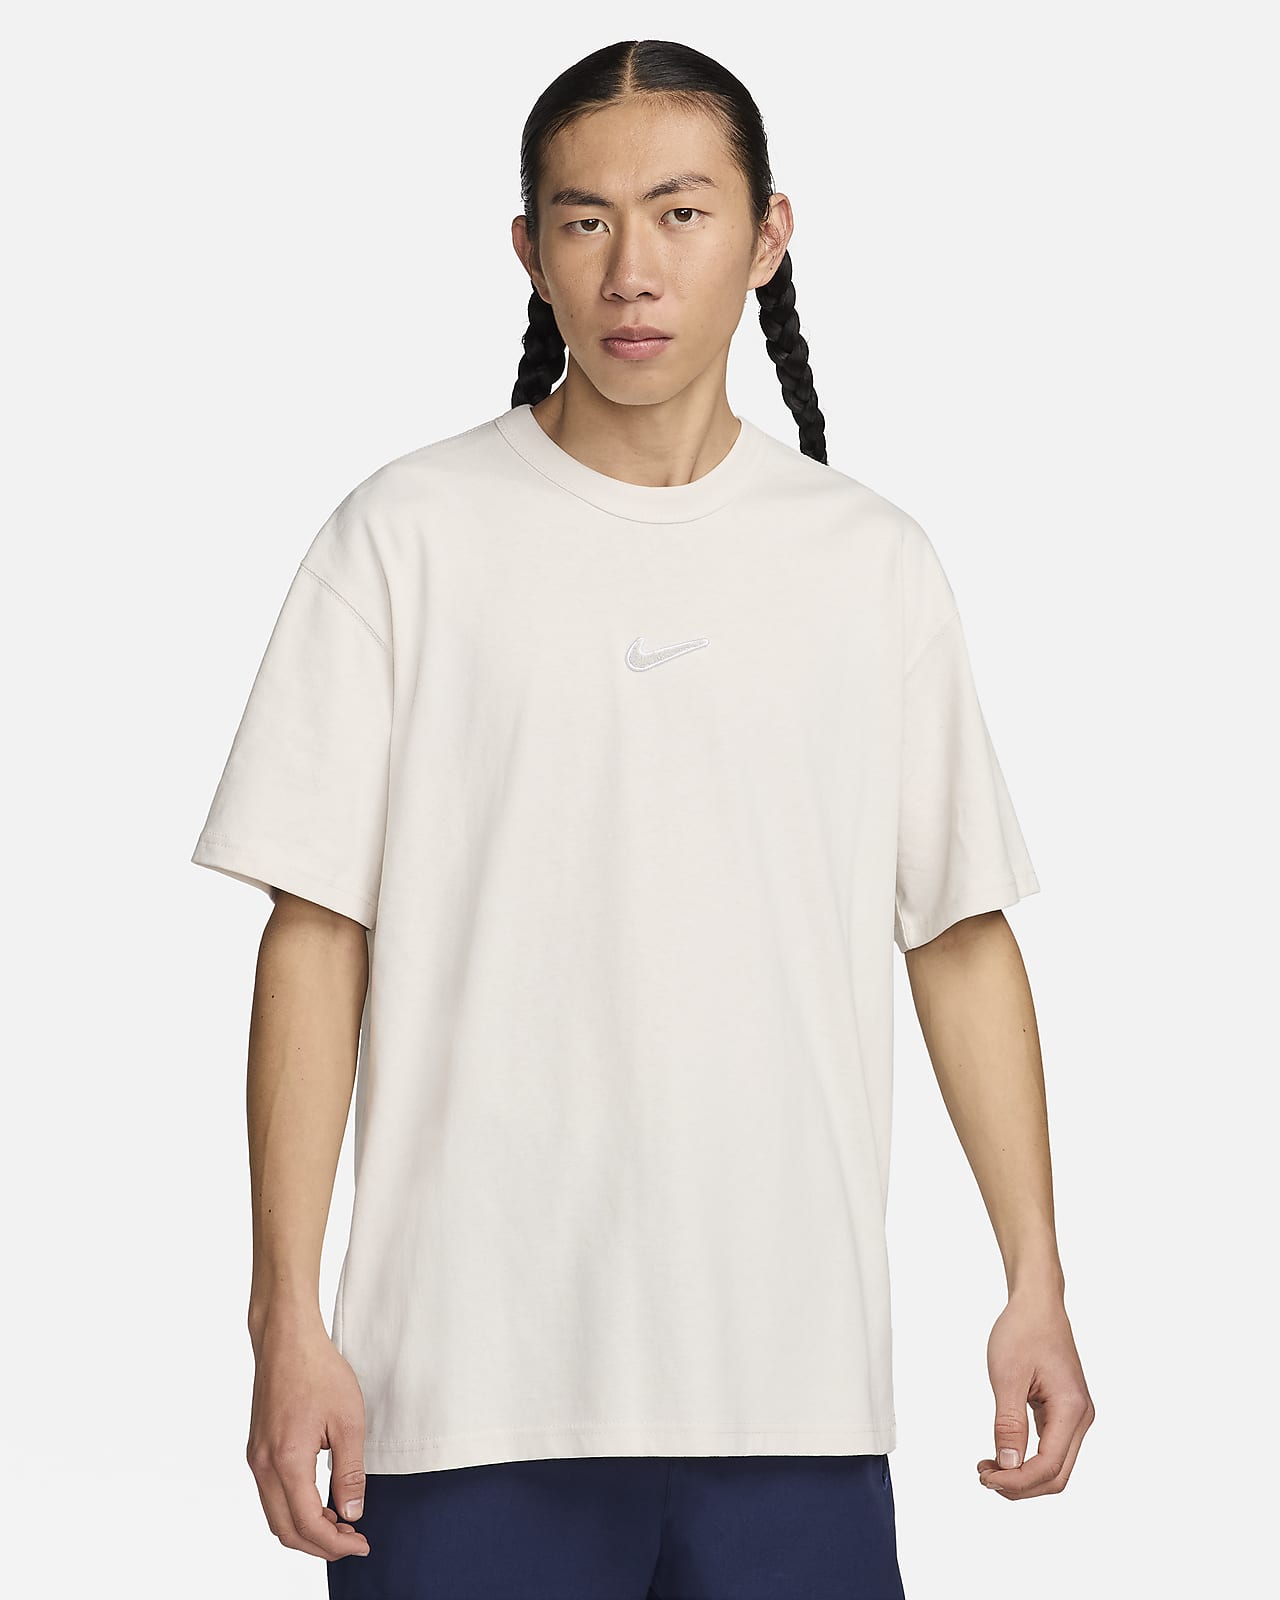 Nike Sportswear 男款 Max90 T 恤